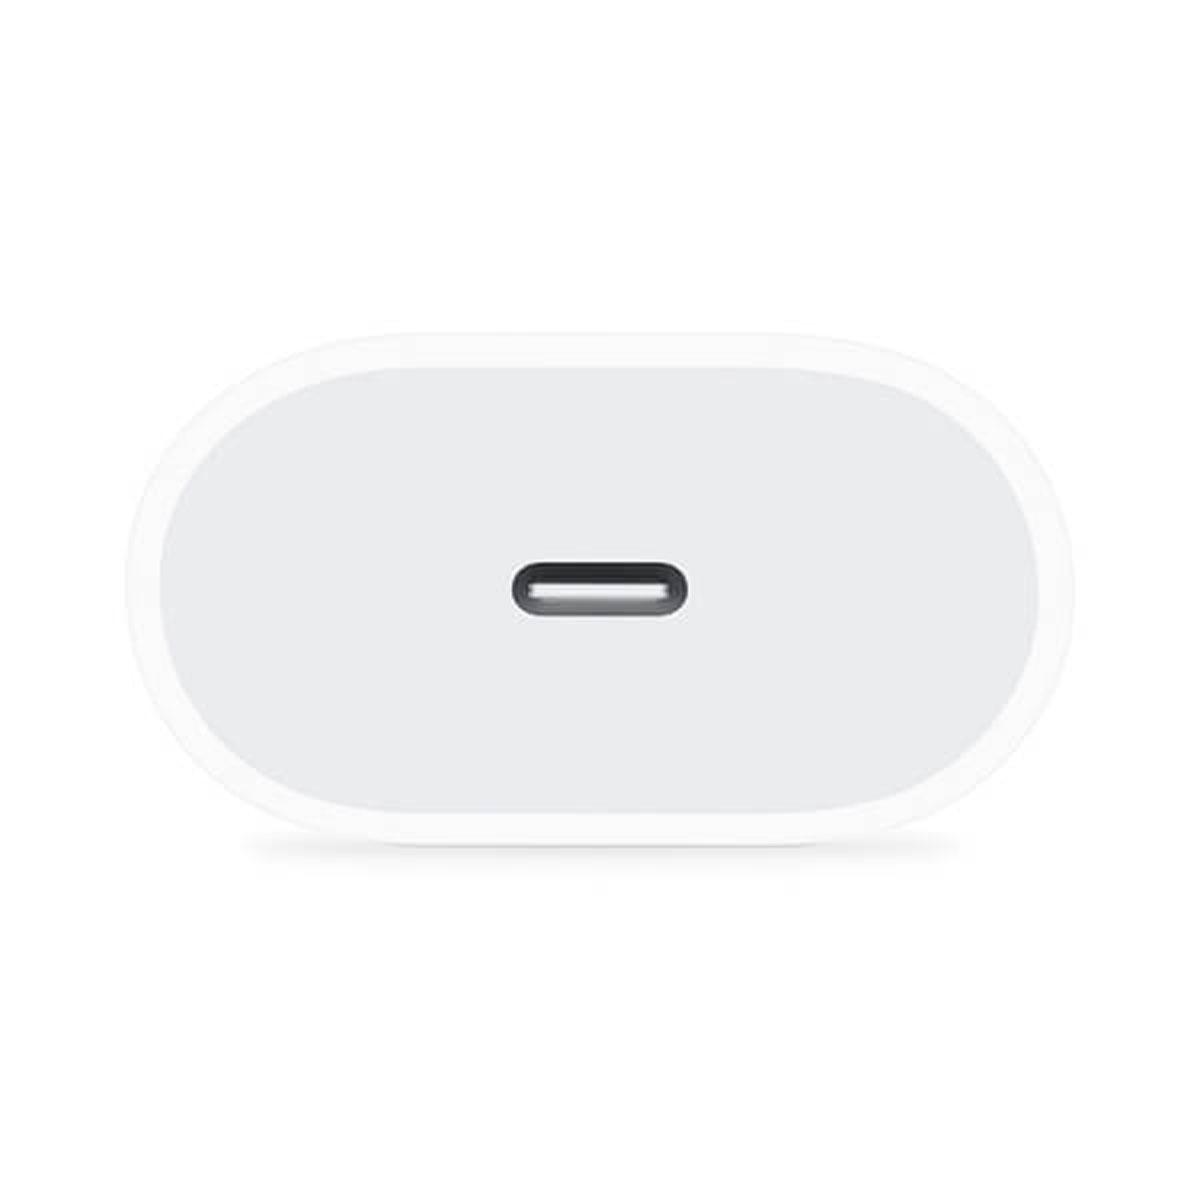 Apple Cargador Original de Carga Rápida USB-C de 20W Blanco